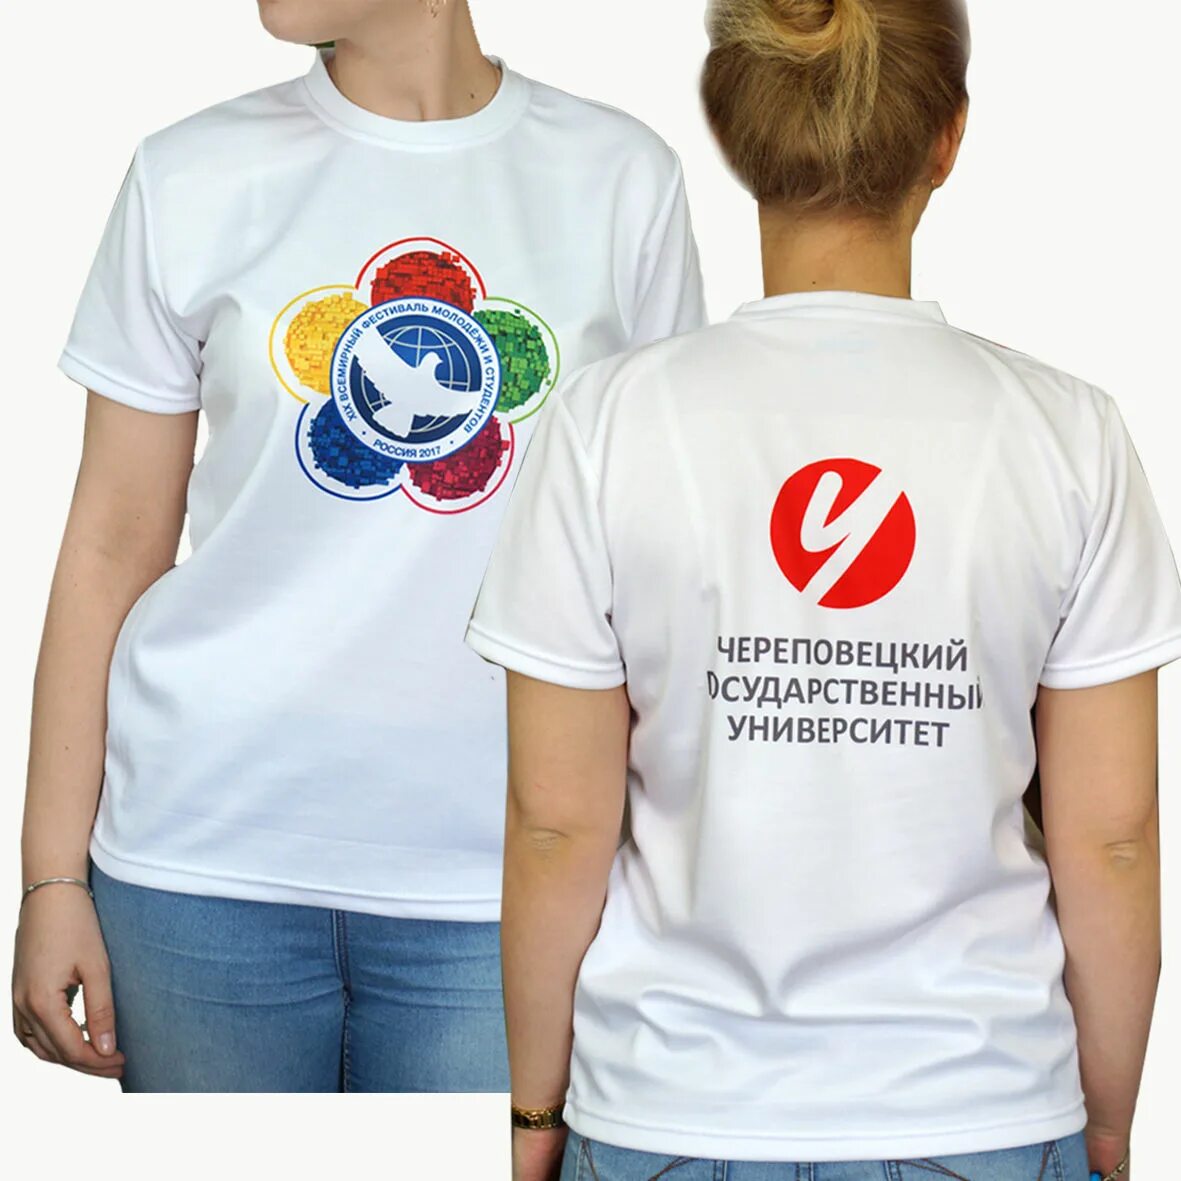 Футболка с логотипом фирмы. Печать на футболках. Эмблема на футболке. Корпоративные футболки.